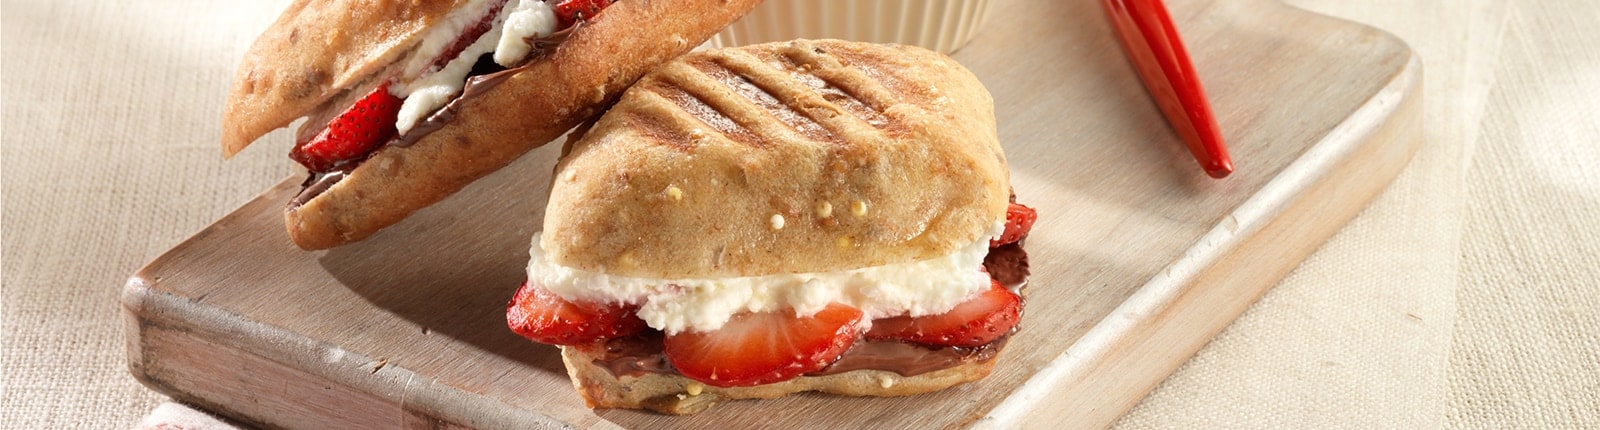 Mini paninis à la fraise et au Nutella<sup>®</sup>